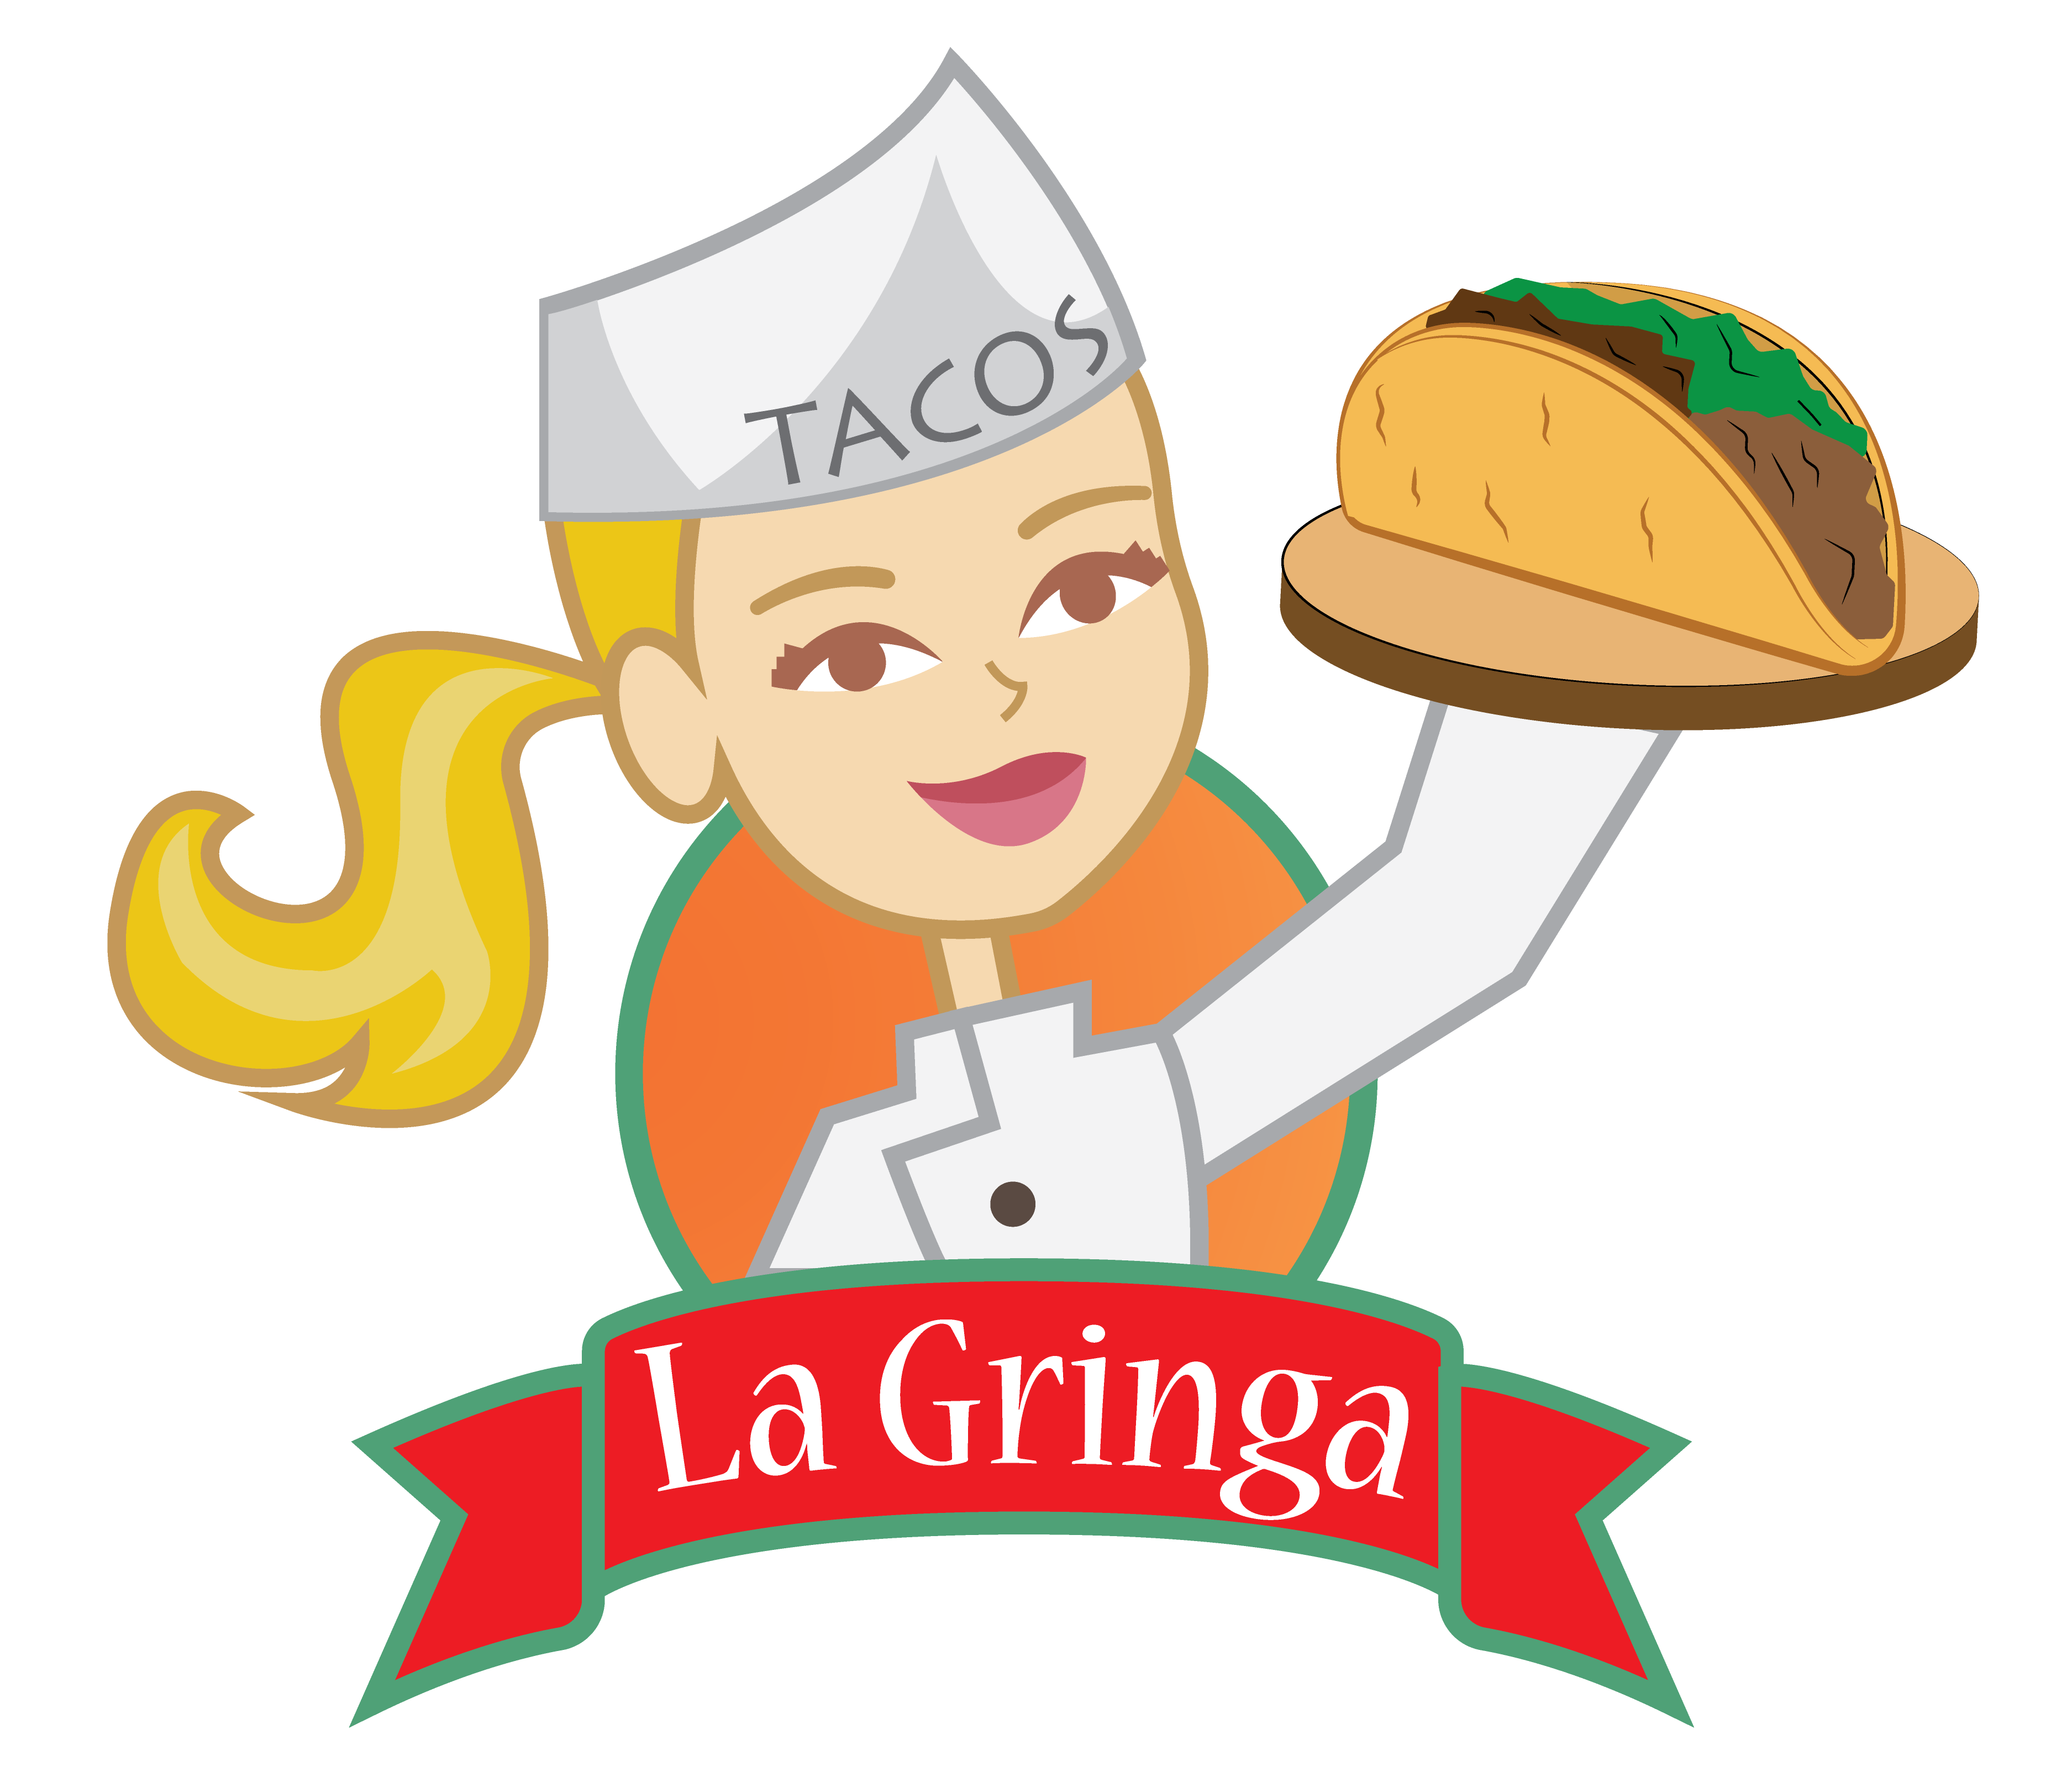 Tacos La Gringa - Broad Street